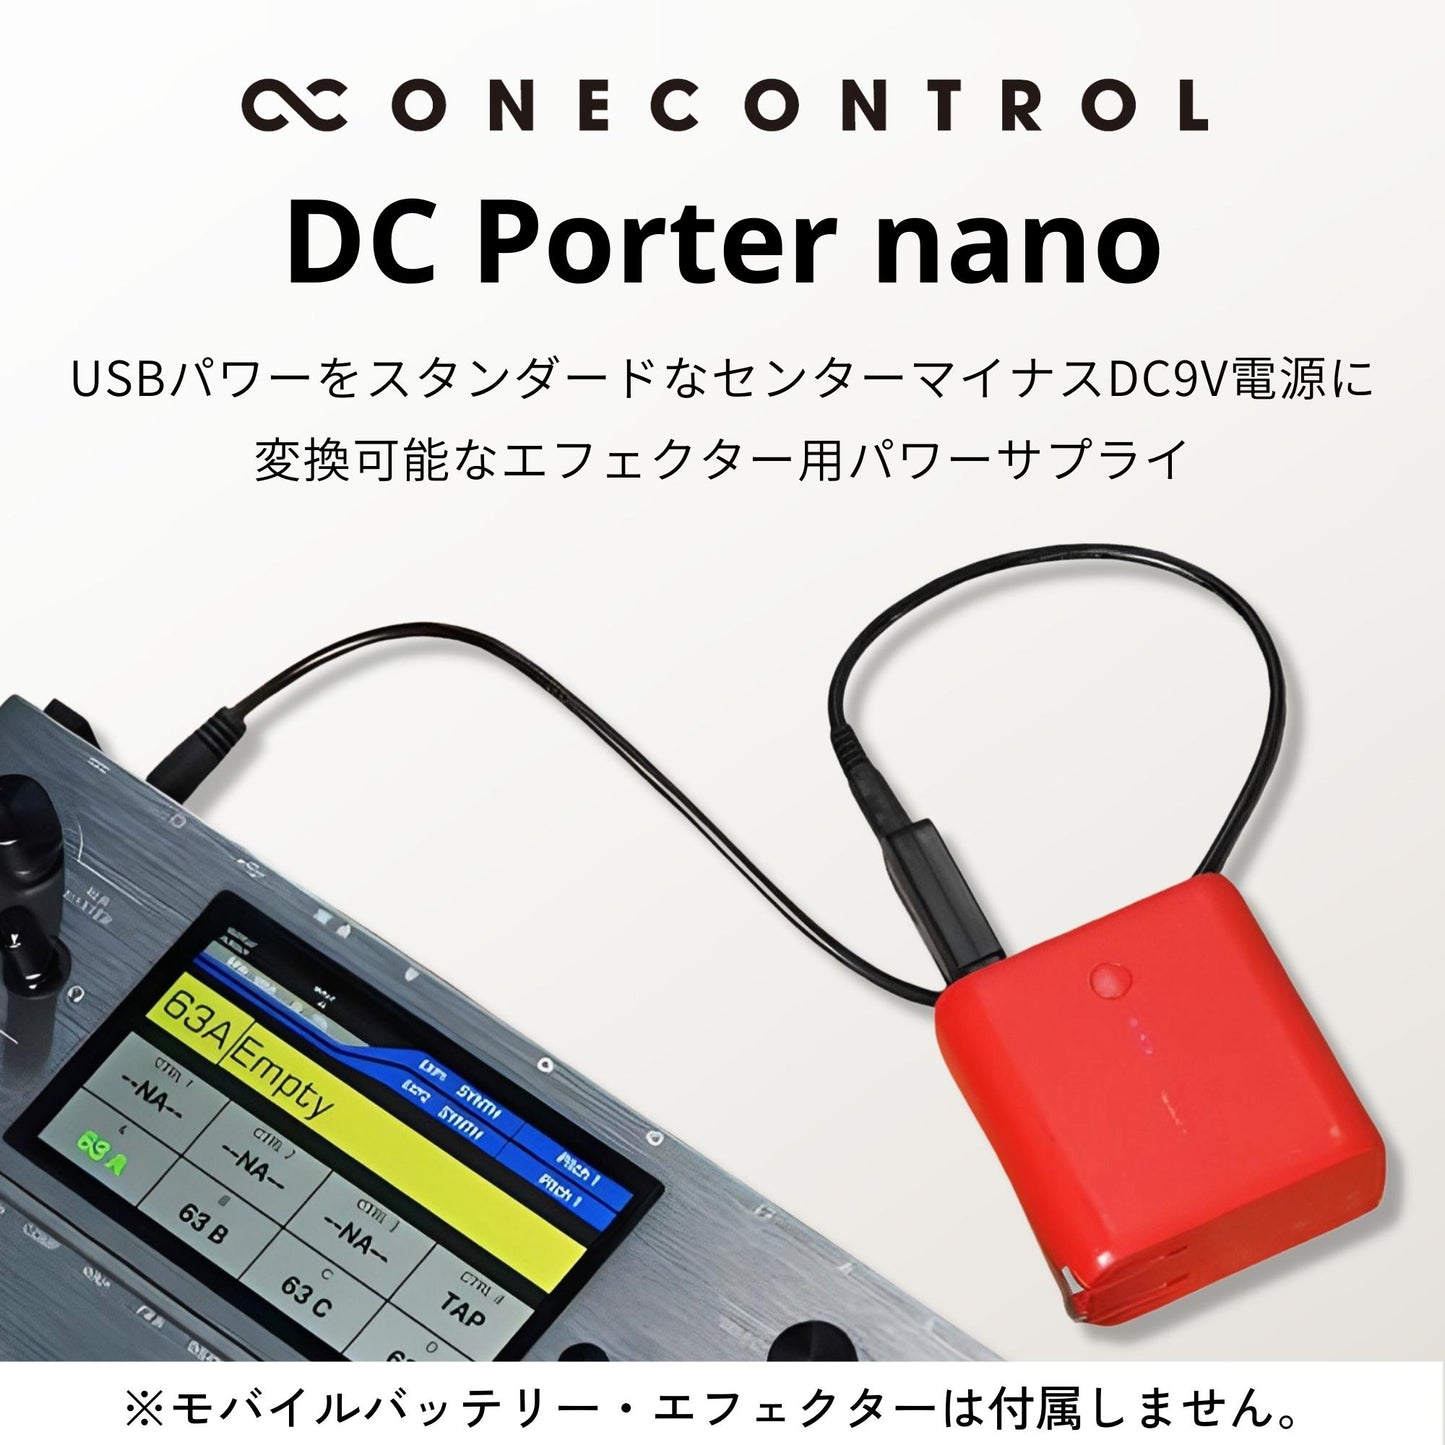 One Control DC Porter nano